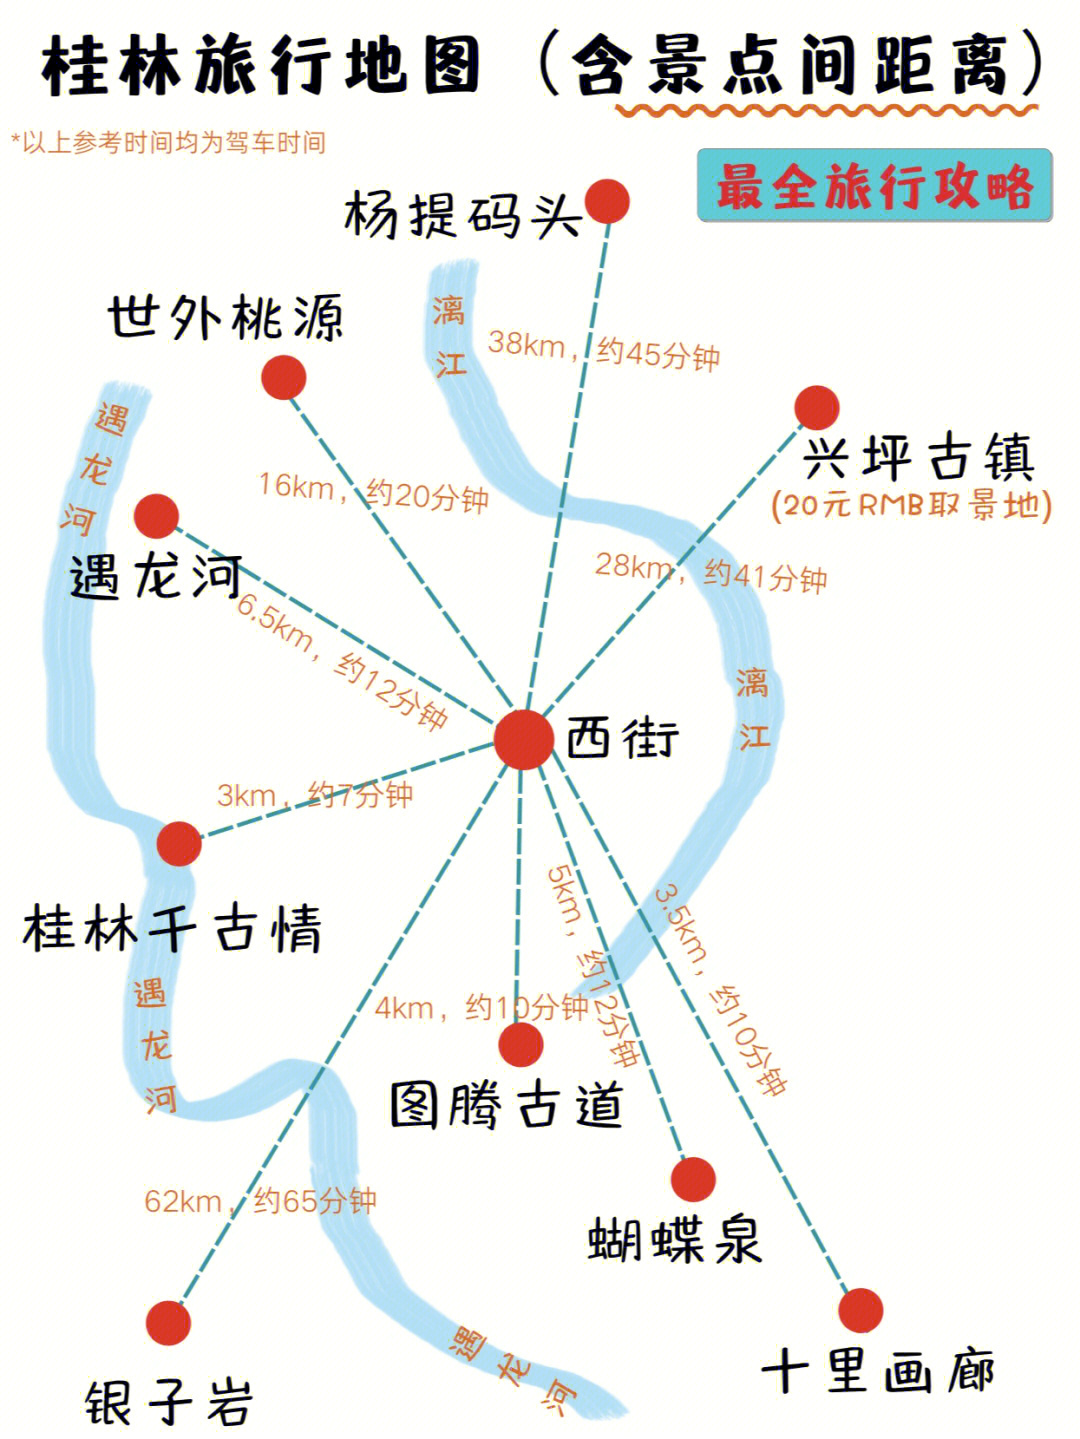 92桂林旅行景点地图含景点距离